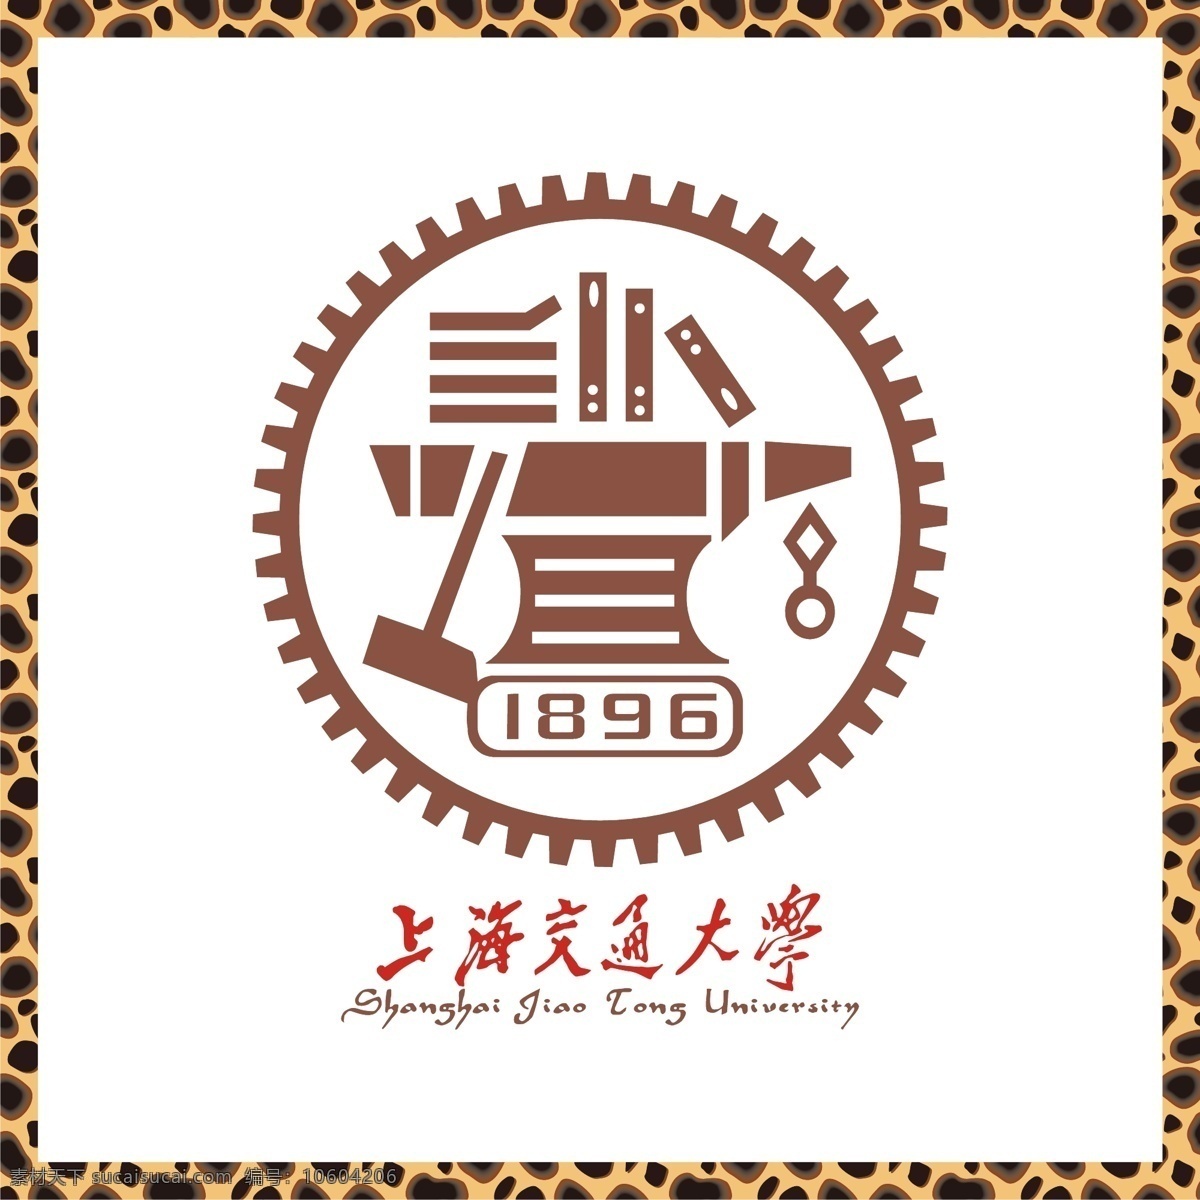 上海交通大学 大学标志 双一流大学 重点大学 公立大学 师范生 教师专业 911大学 285大学 logo 标志 矢量 vi logo设计